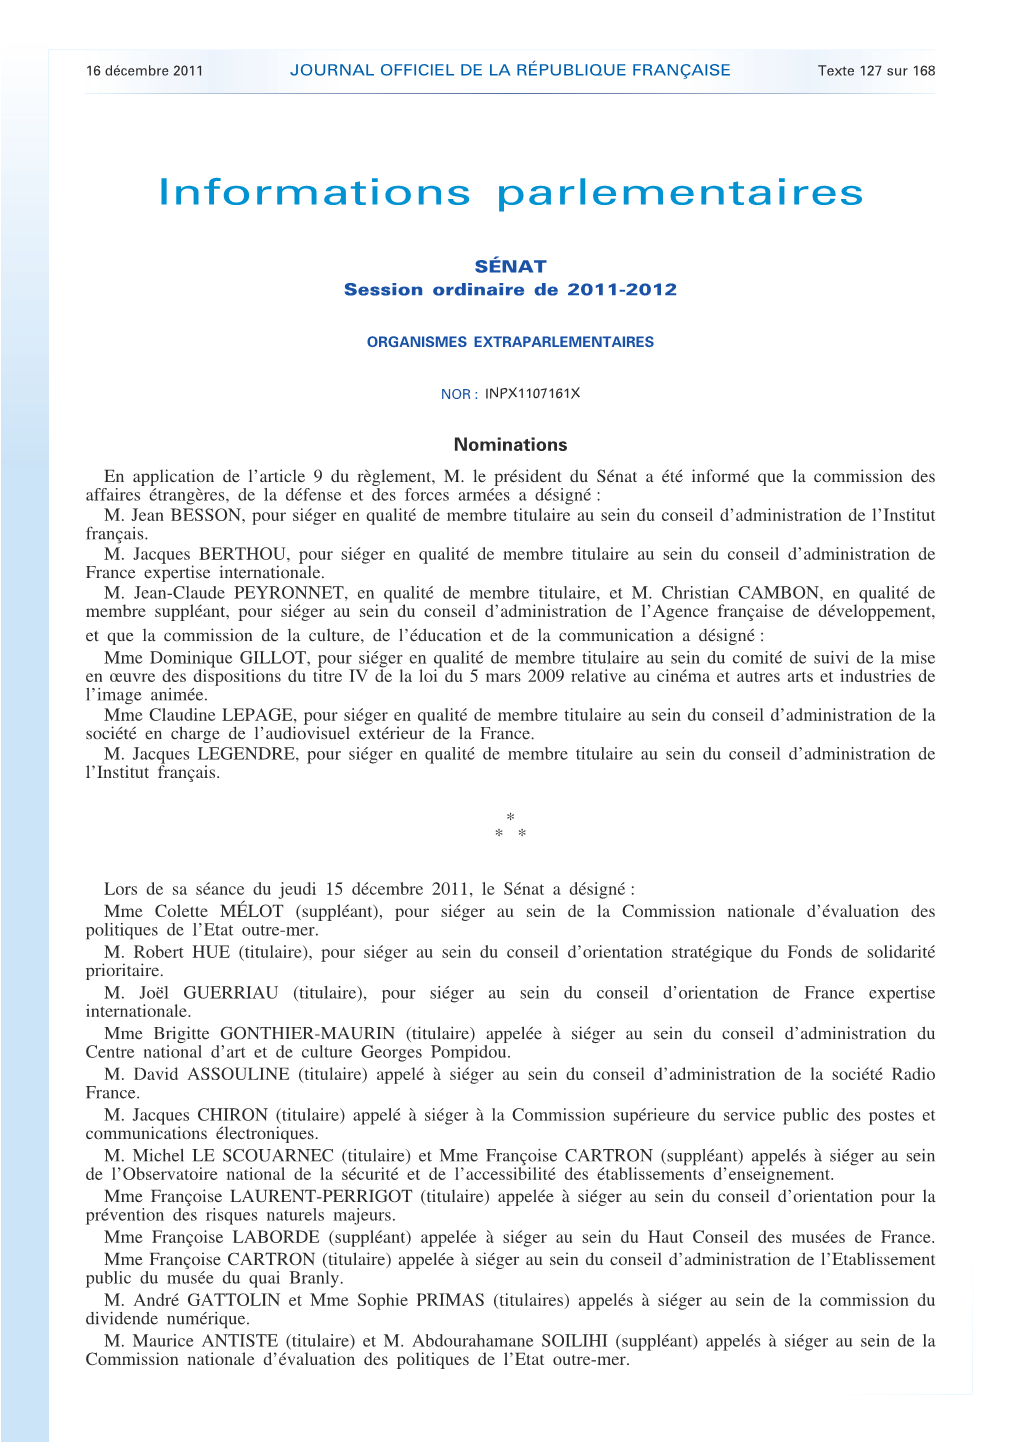 JOURNAL OFFICIEL DE LA RÉPUBLIQUE FRANÇAISE Texte 127 Sur 168